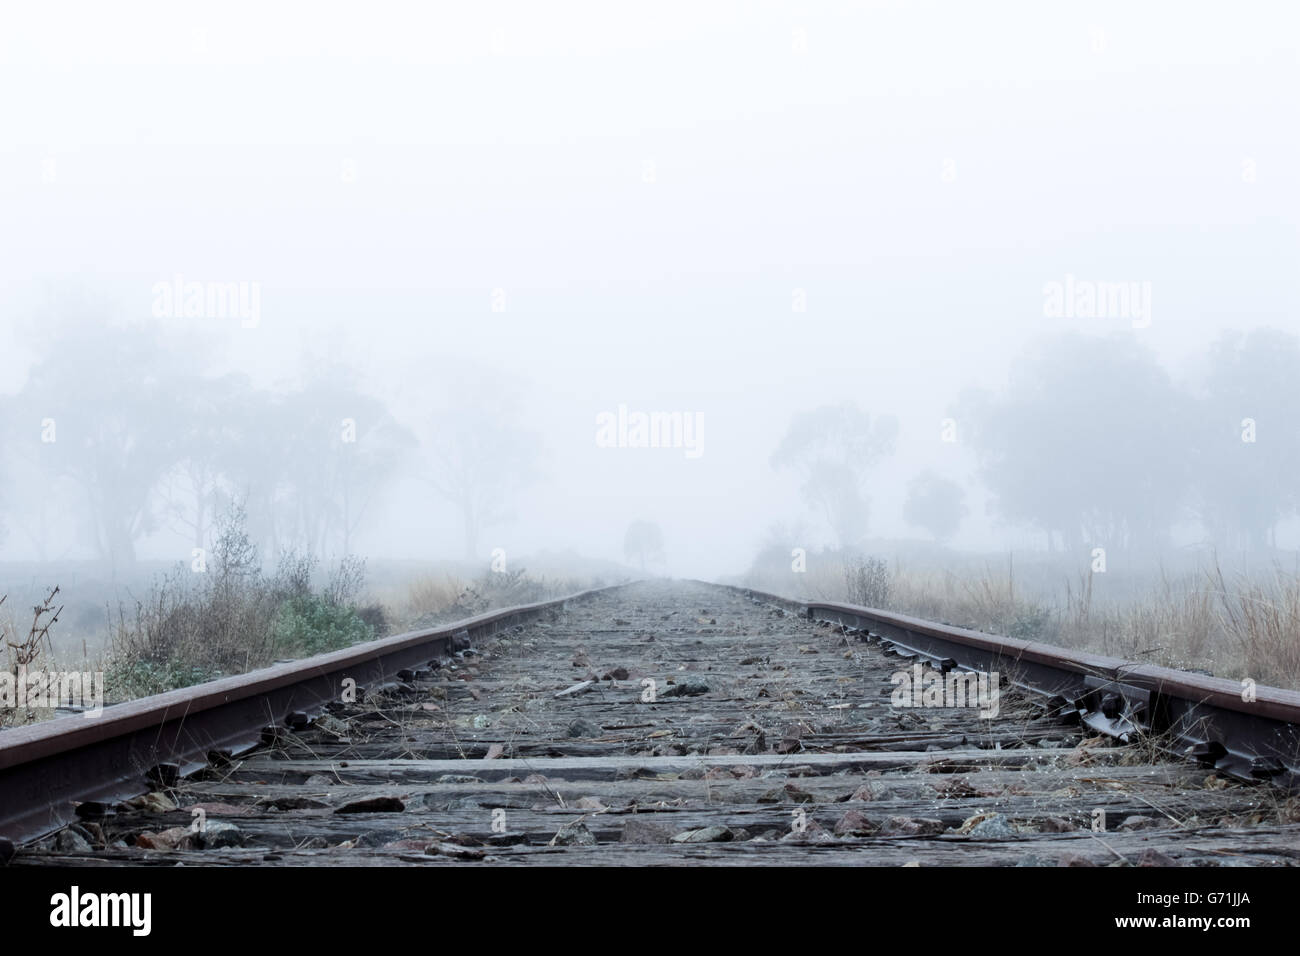 Tôt le matin, promenade dans la campagne le long des lignes de chemin de fer dans le brouillard et le gel. Faible visibilité Banque D'Images